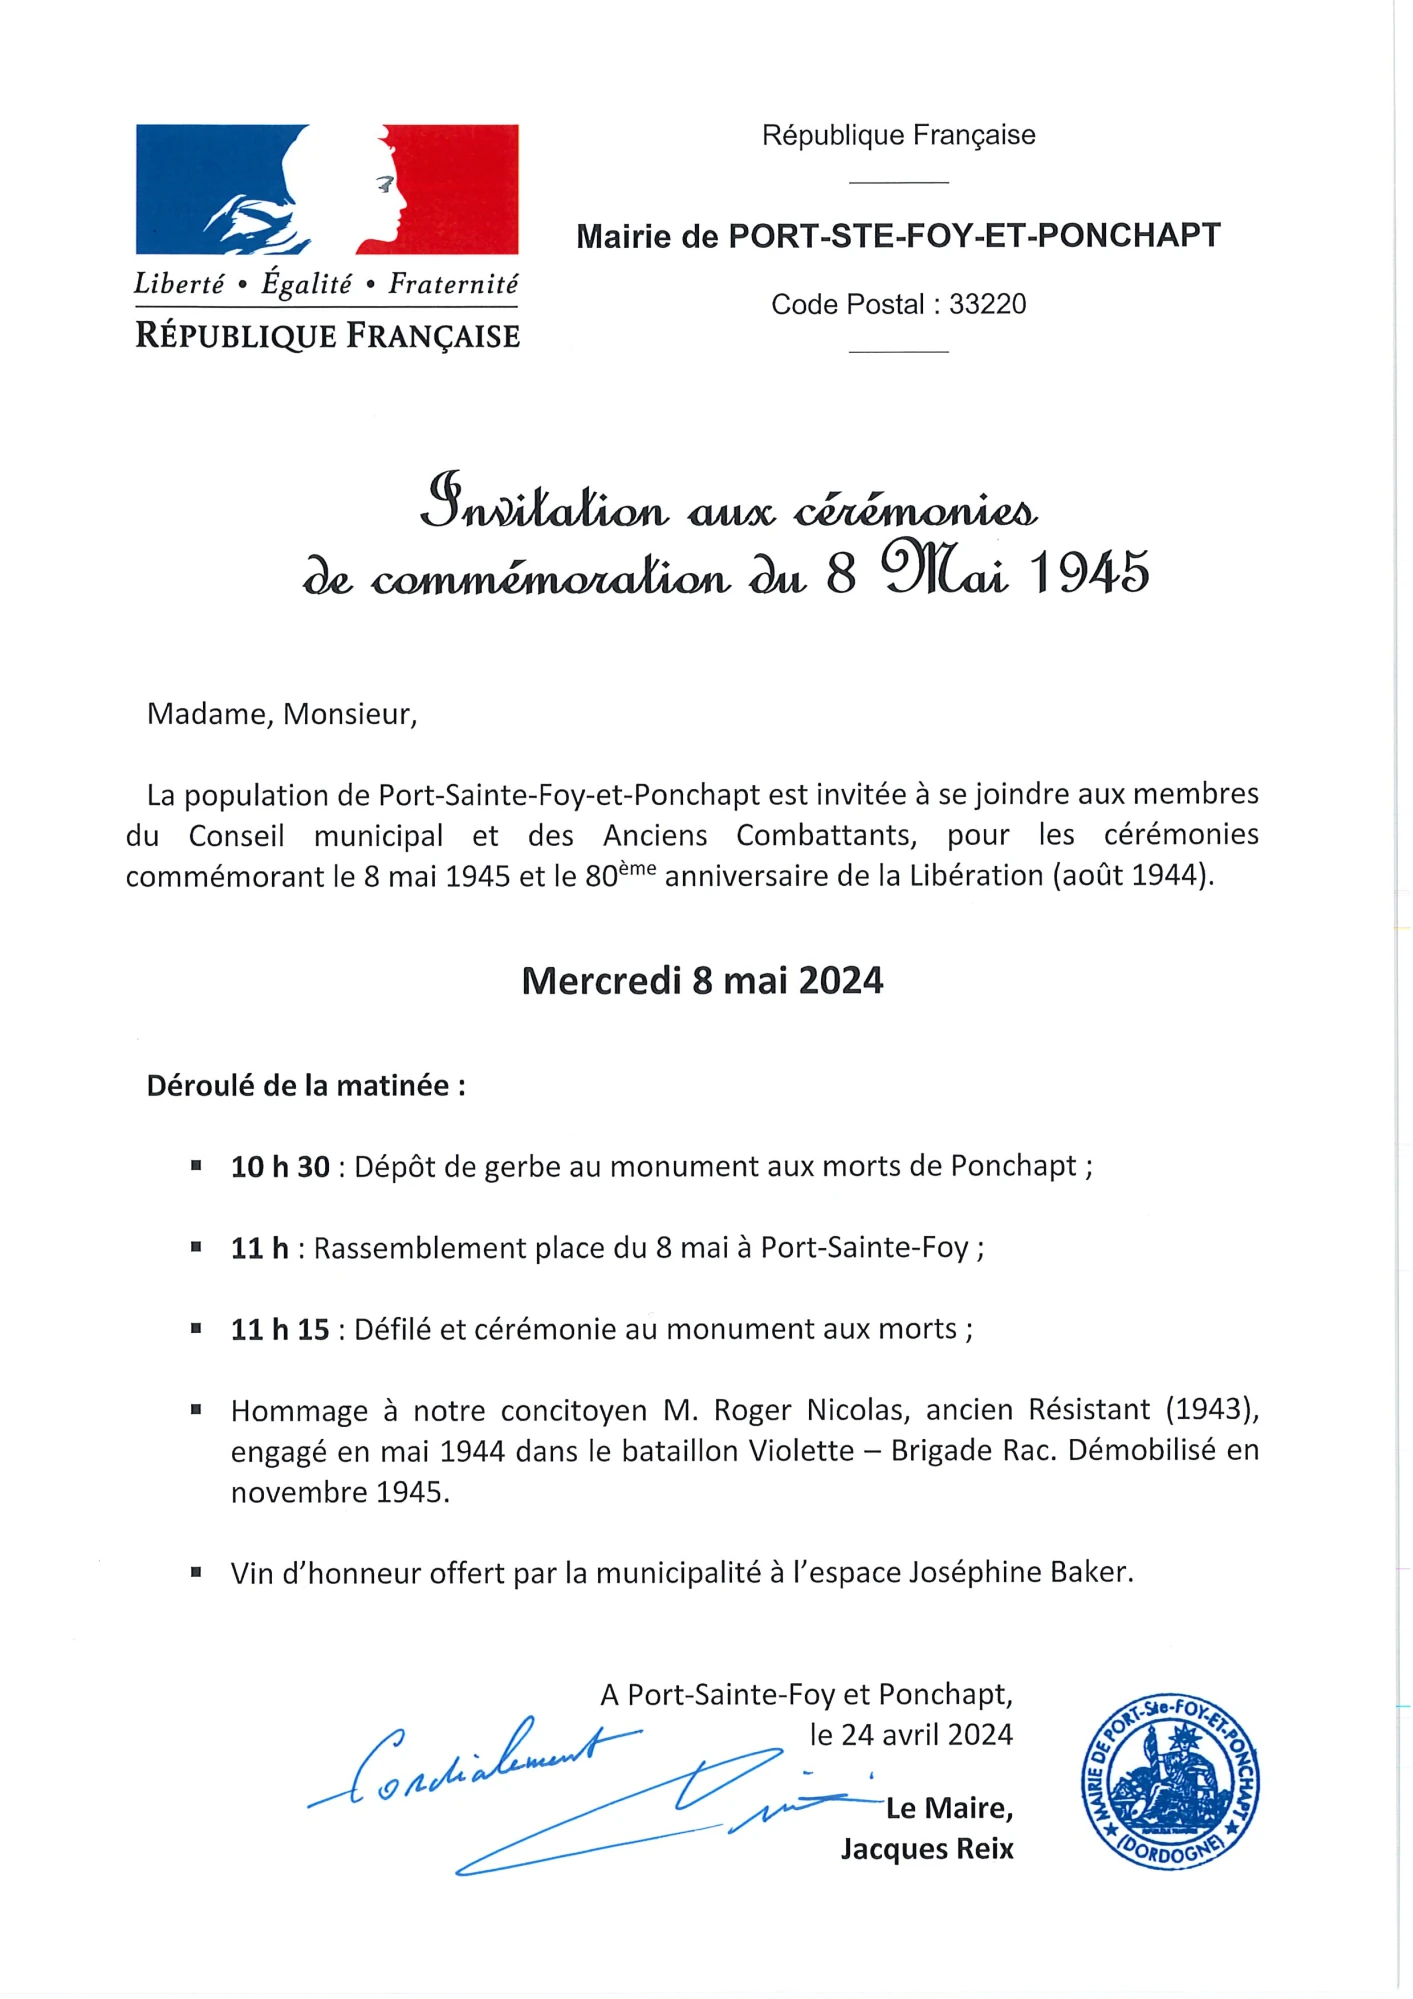 [08-05] Invitation aux cérémonies de commémoration du 8 Mai 1945